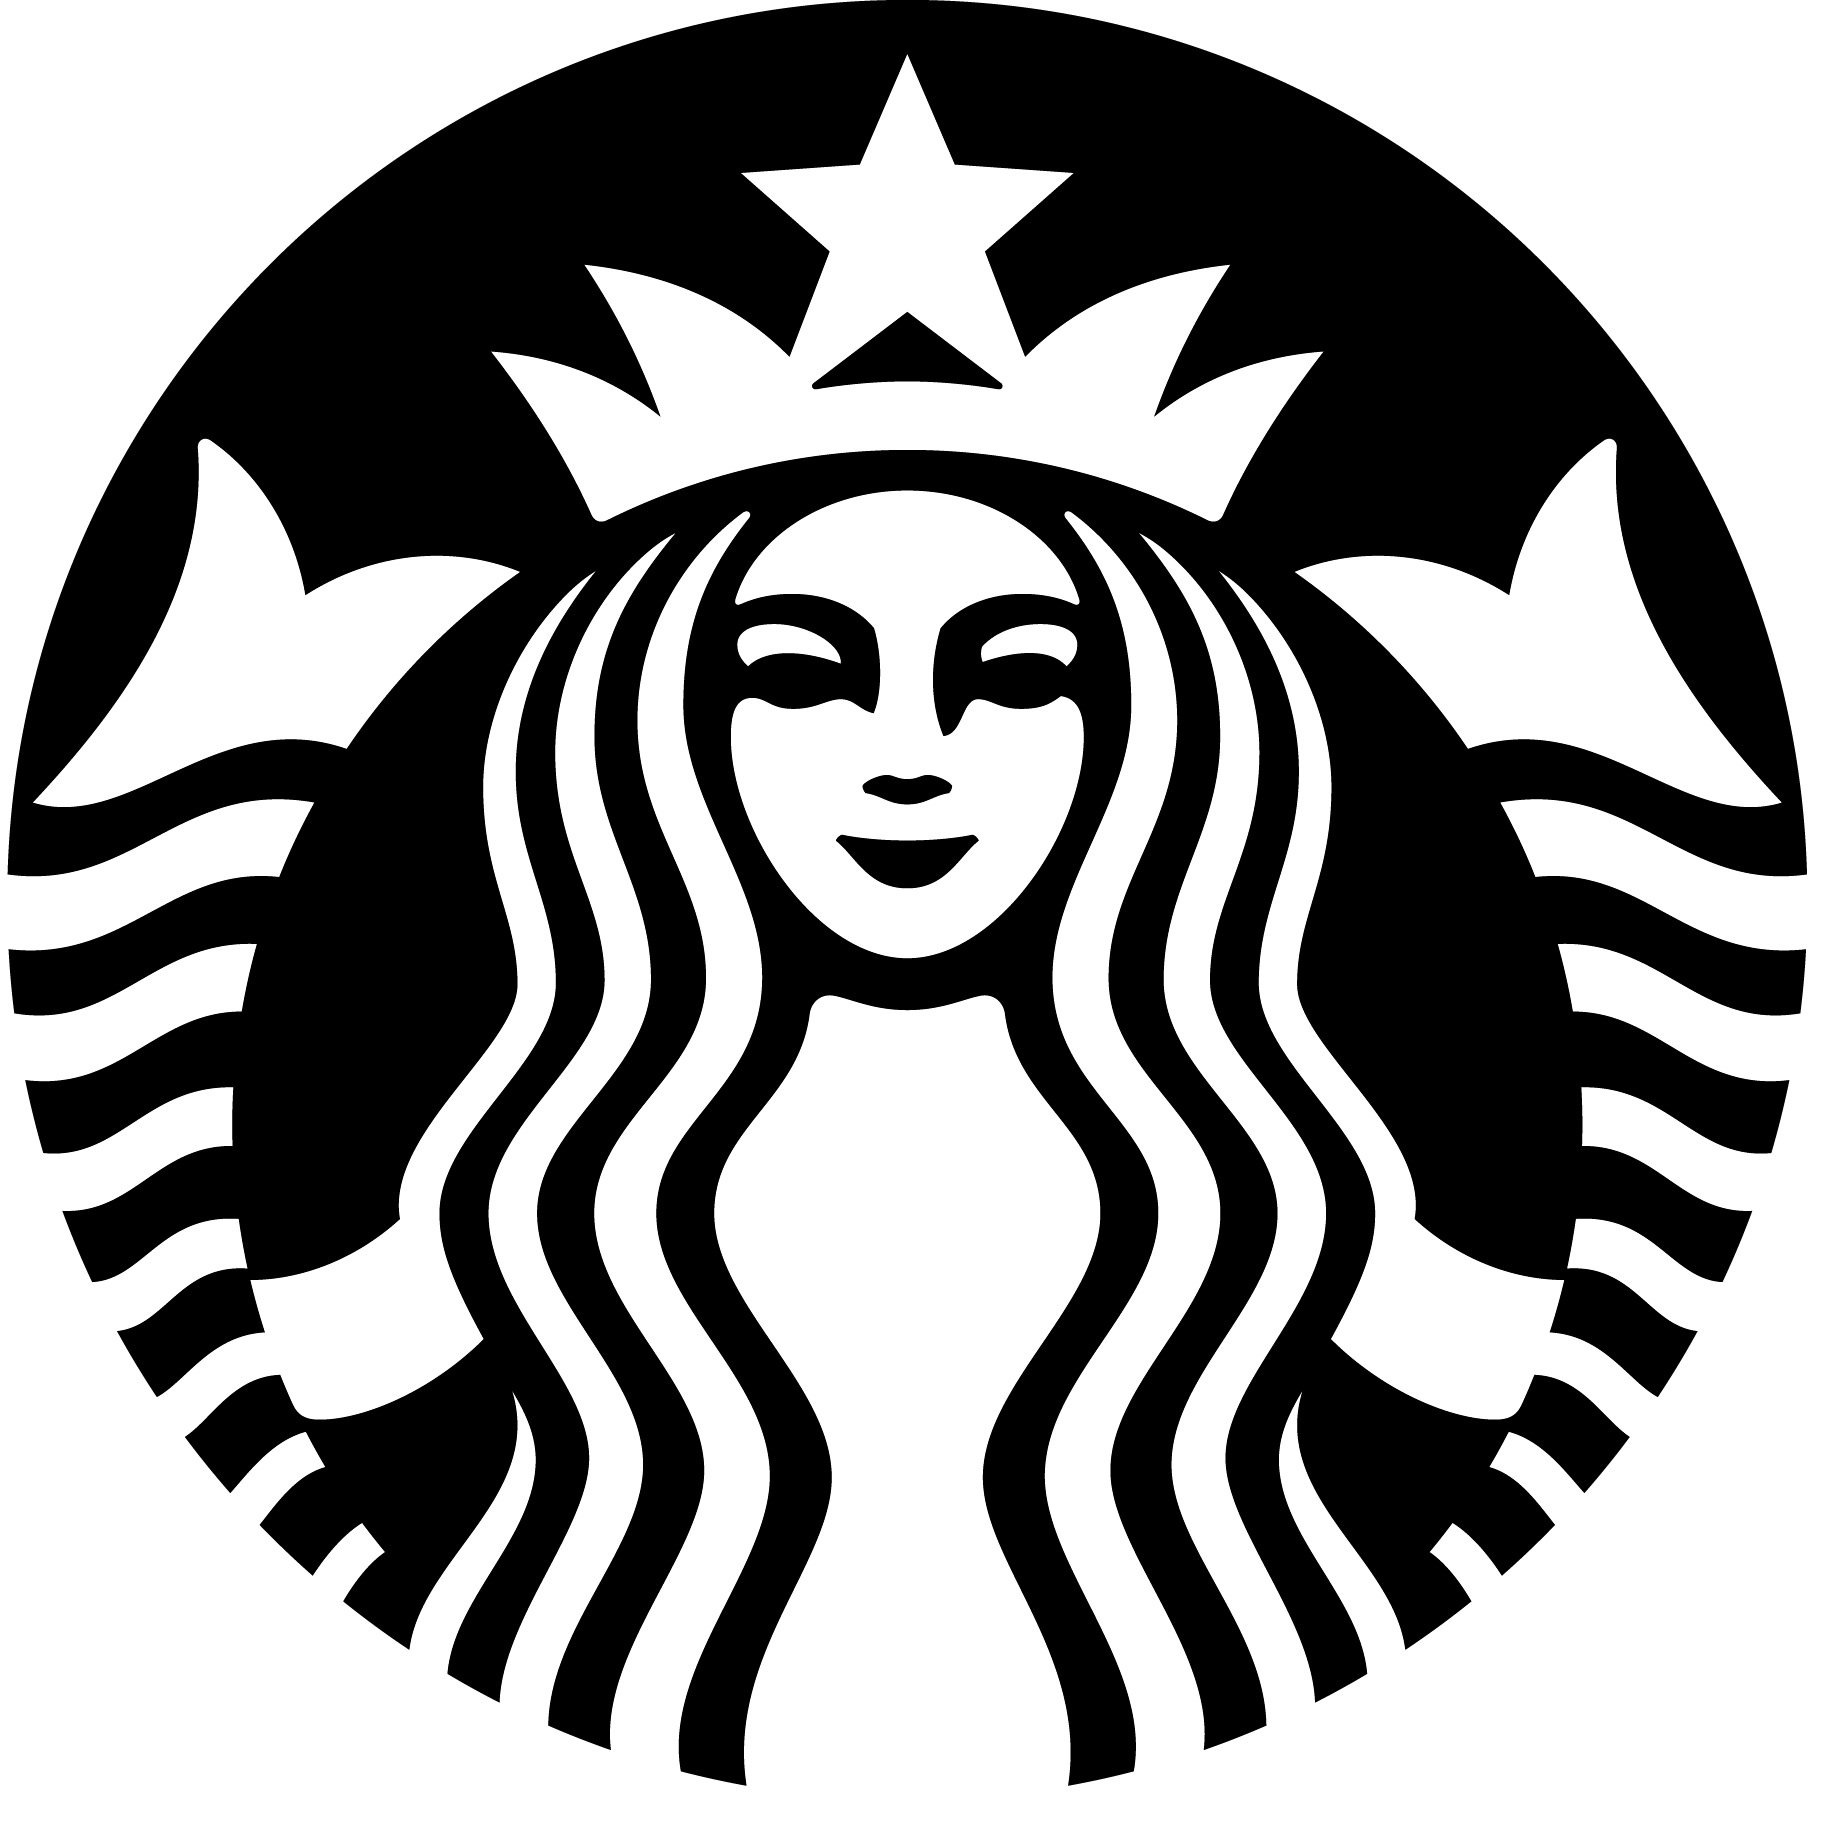 Starbucks_logo_vert_cw.jpg